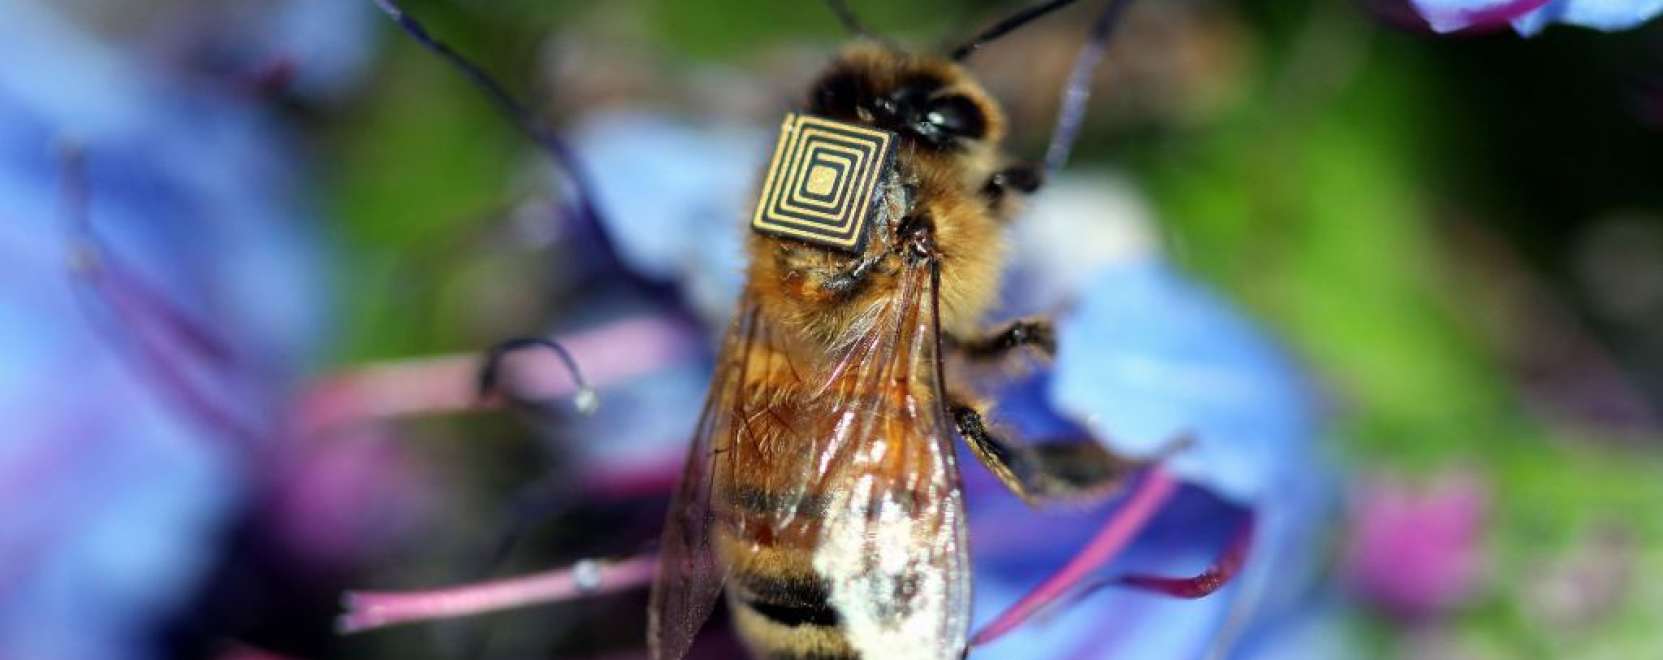 Mézes madzag: hová tűnnek a méhek?